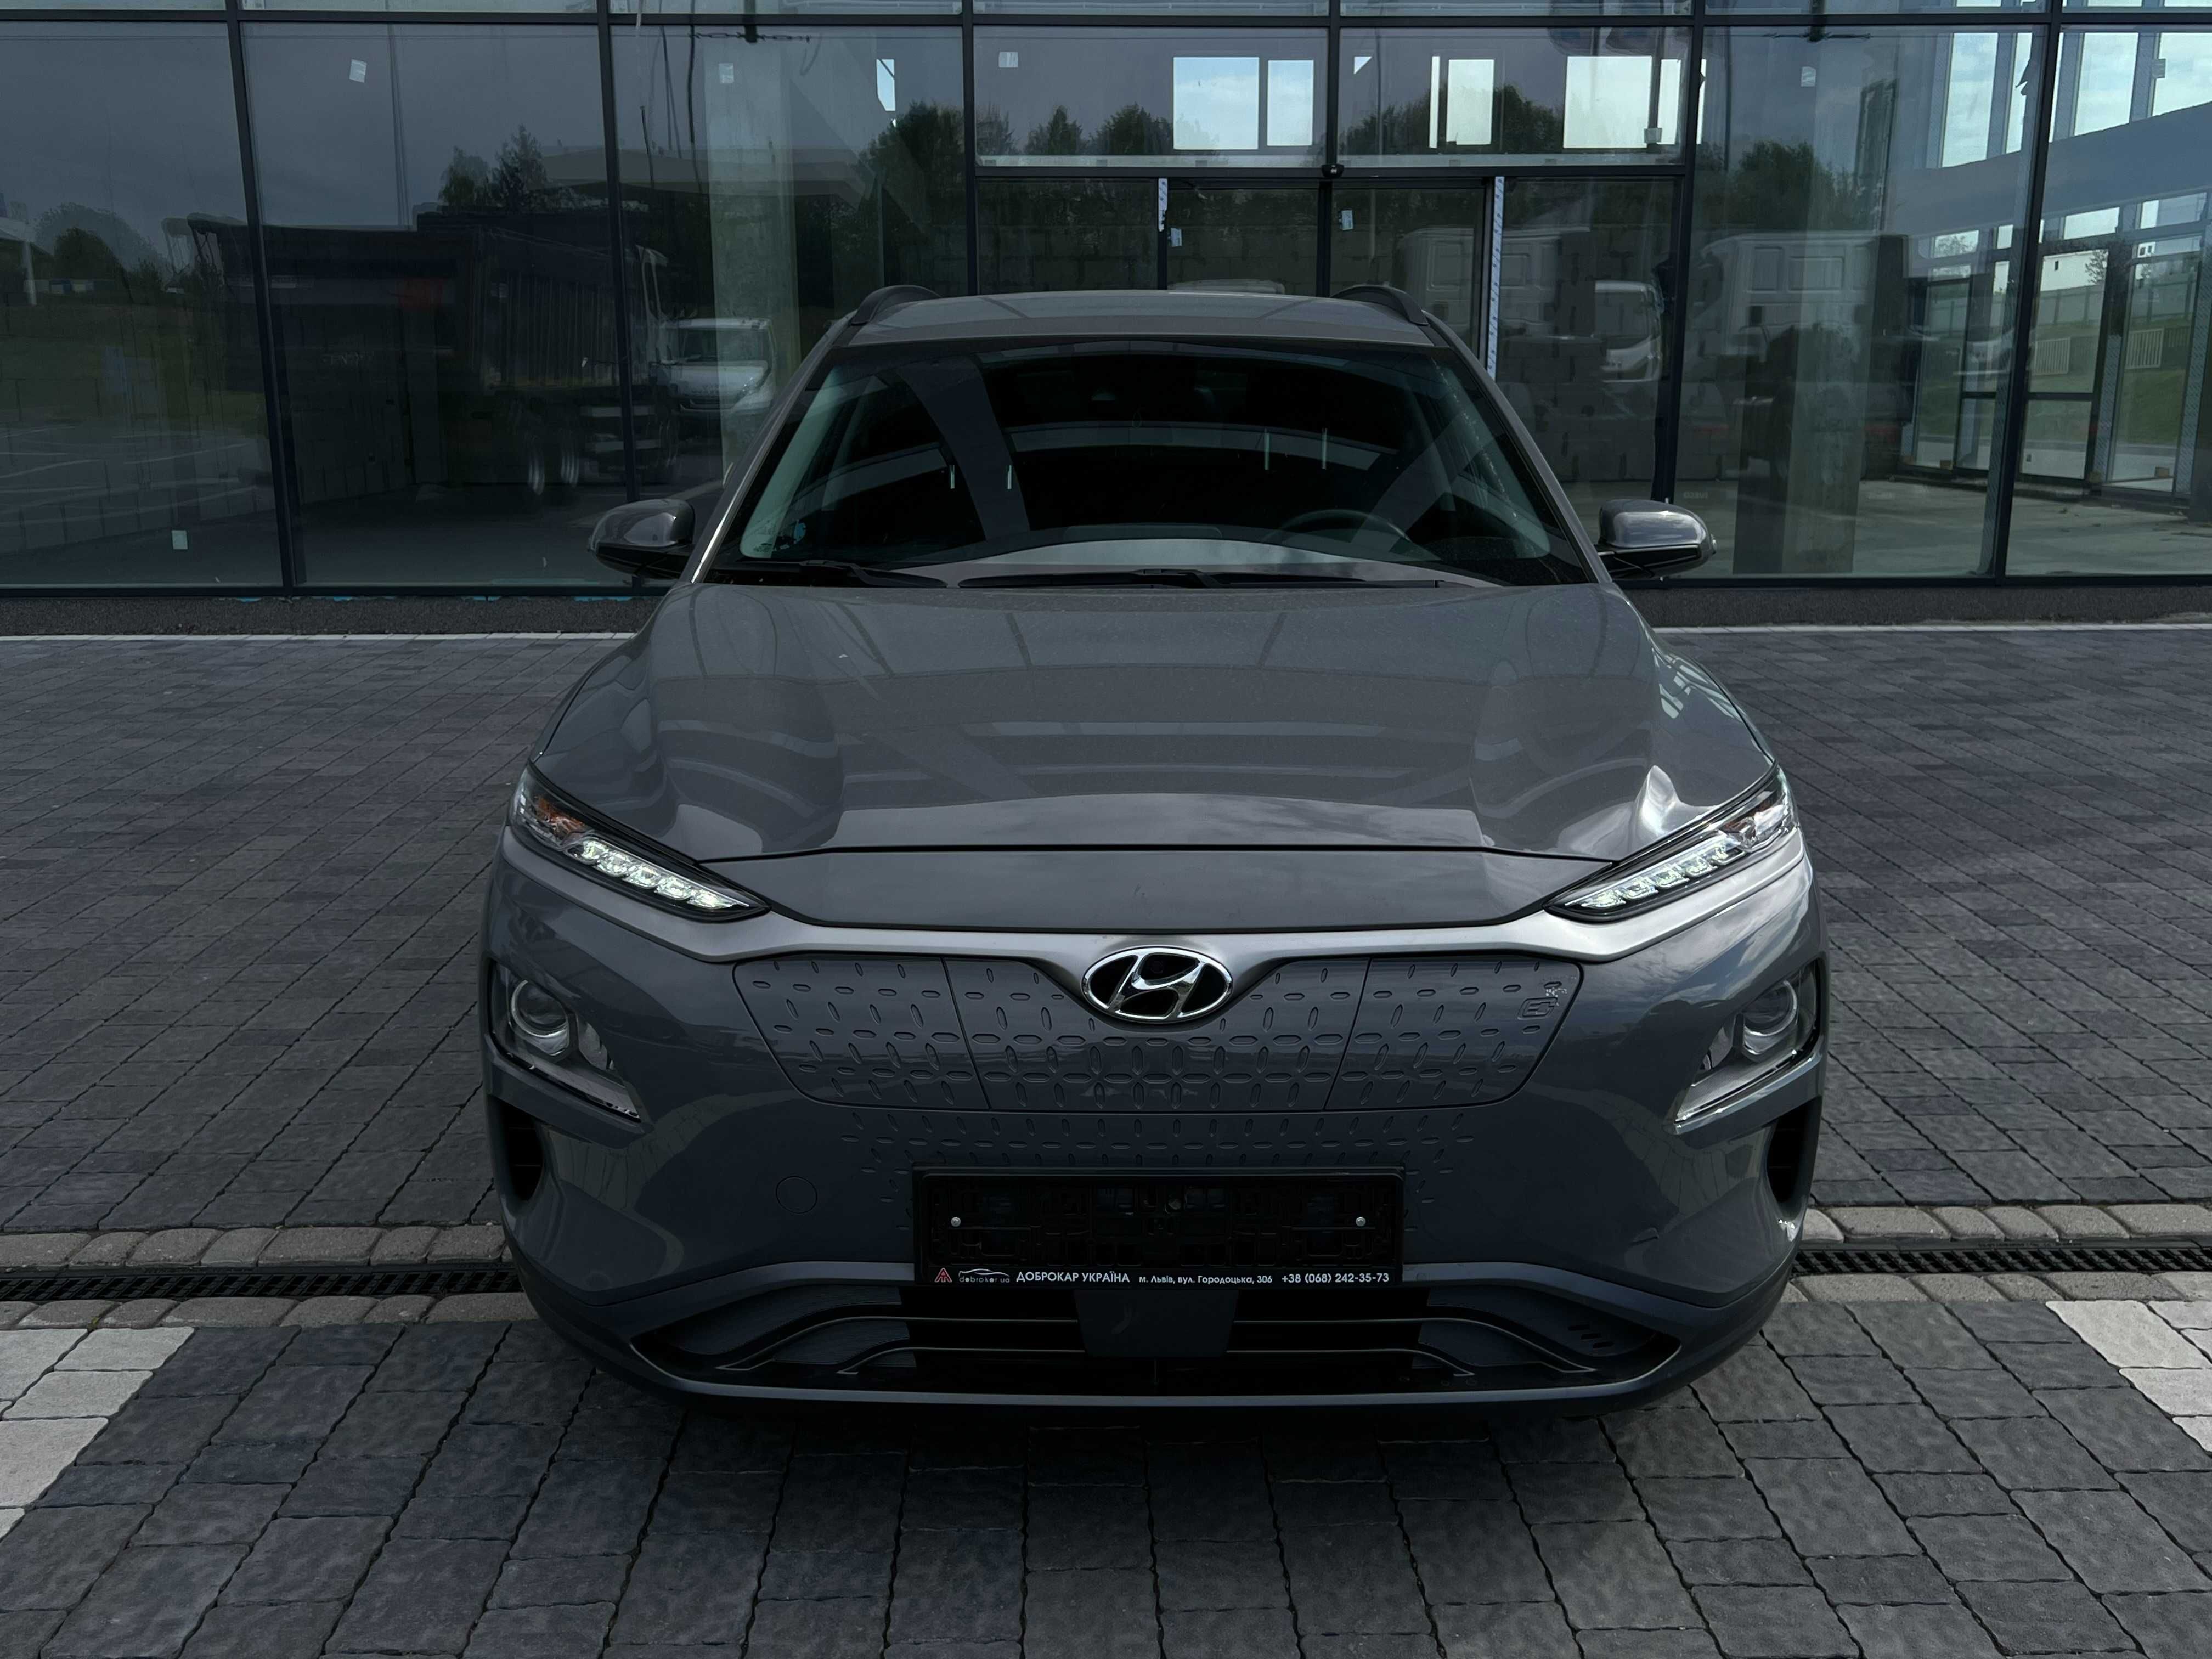 Hyundai Kona EV Advantage 2020 39 кВт/год